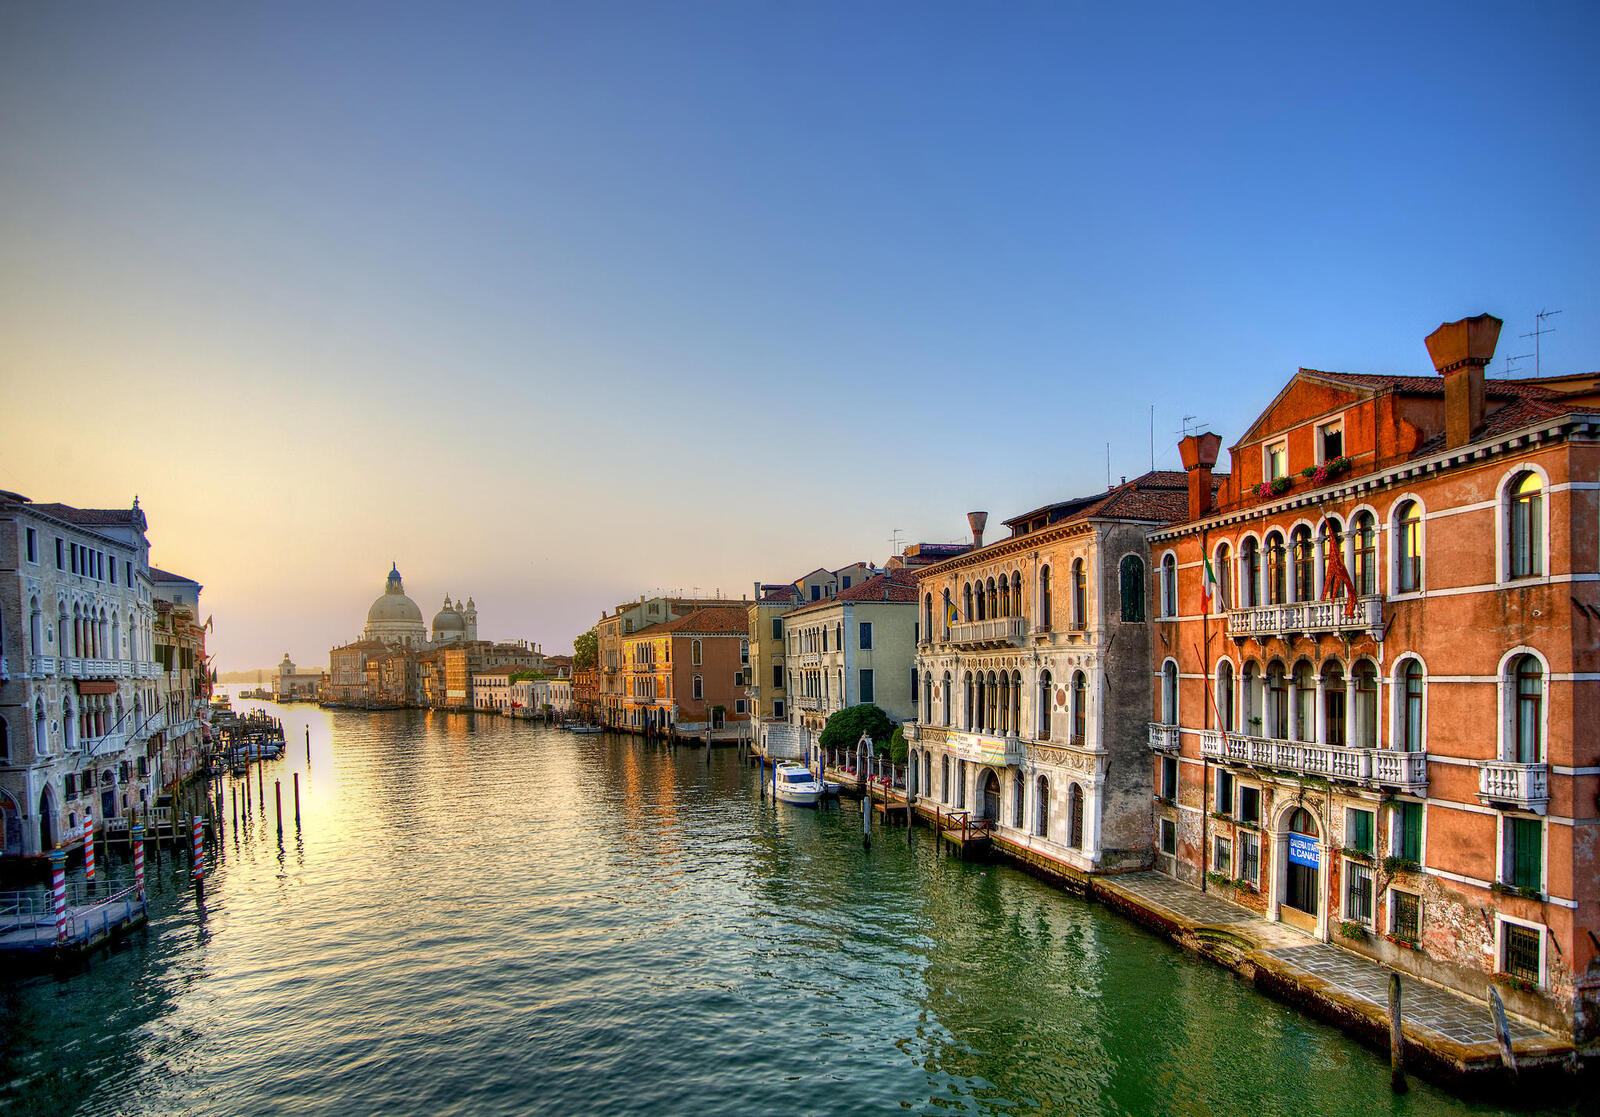 Обои Venice - Italy Венеция Италия на рабочий стол